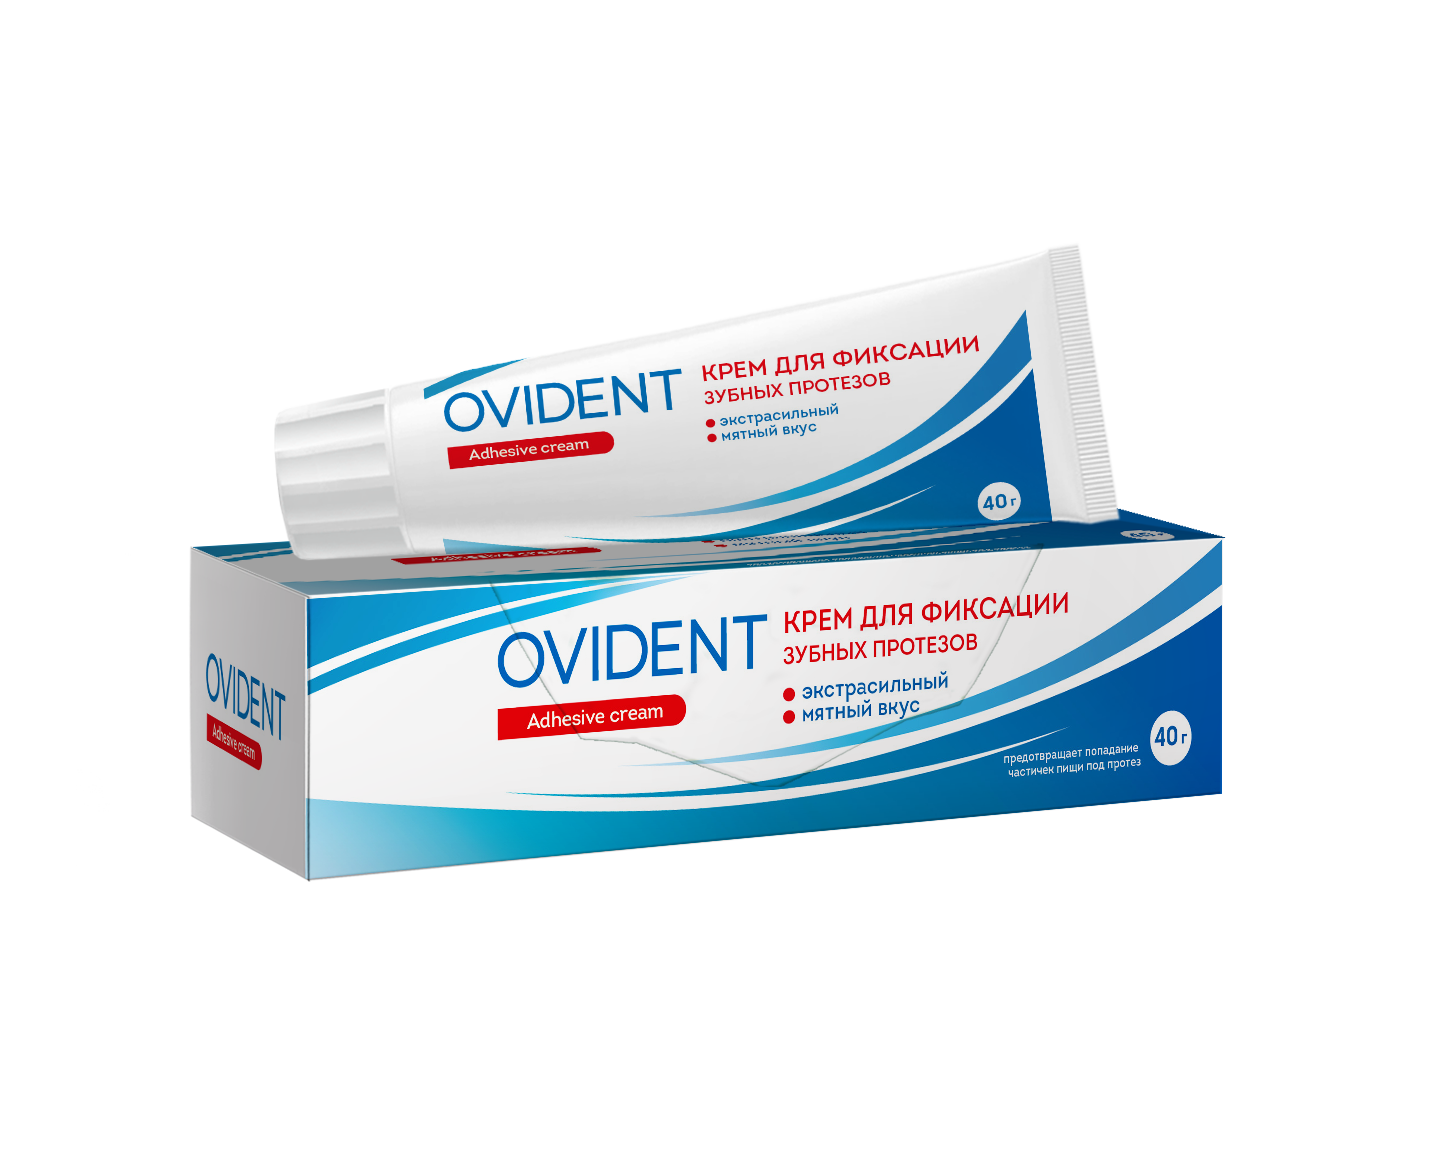 OVIDENT, Крем для фиксации зубных протезов Экстрасильный, 40 мг